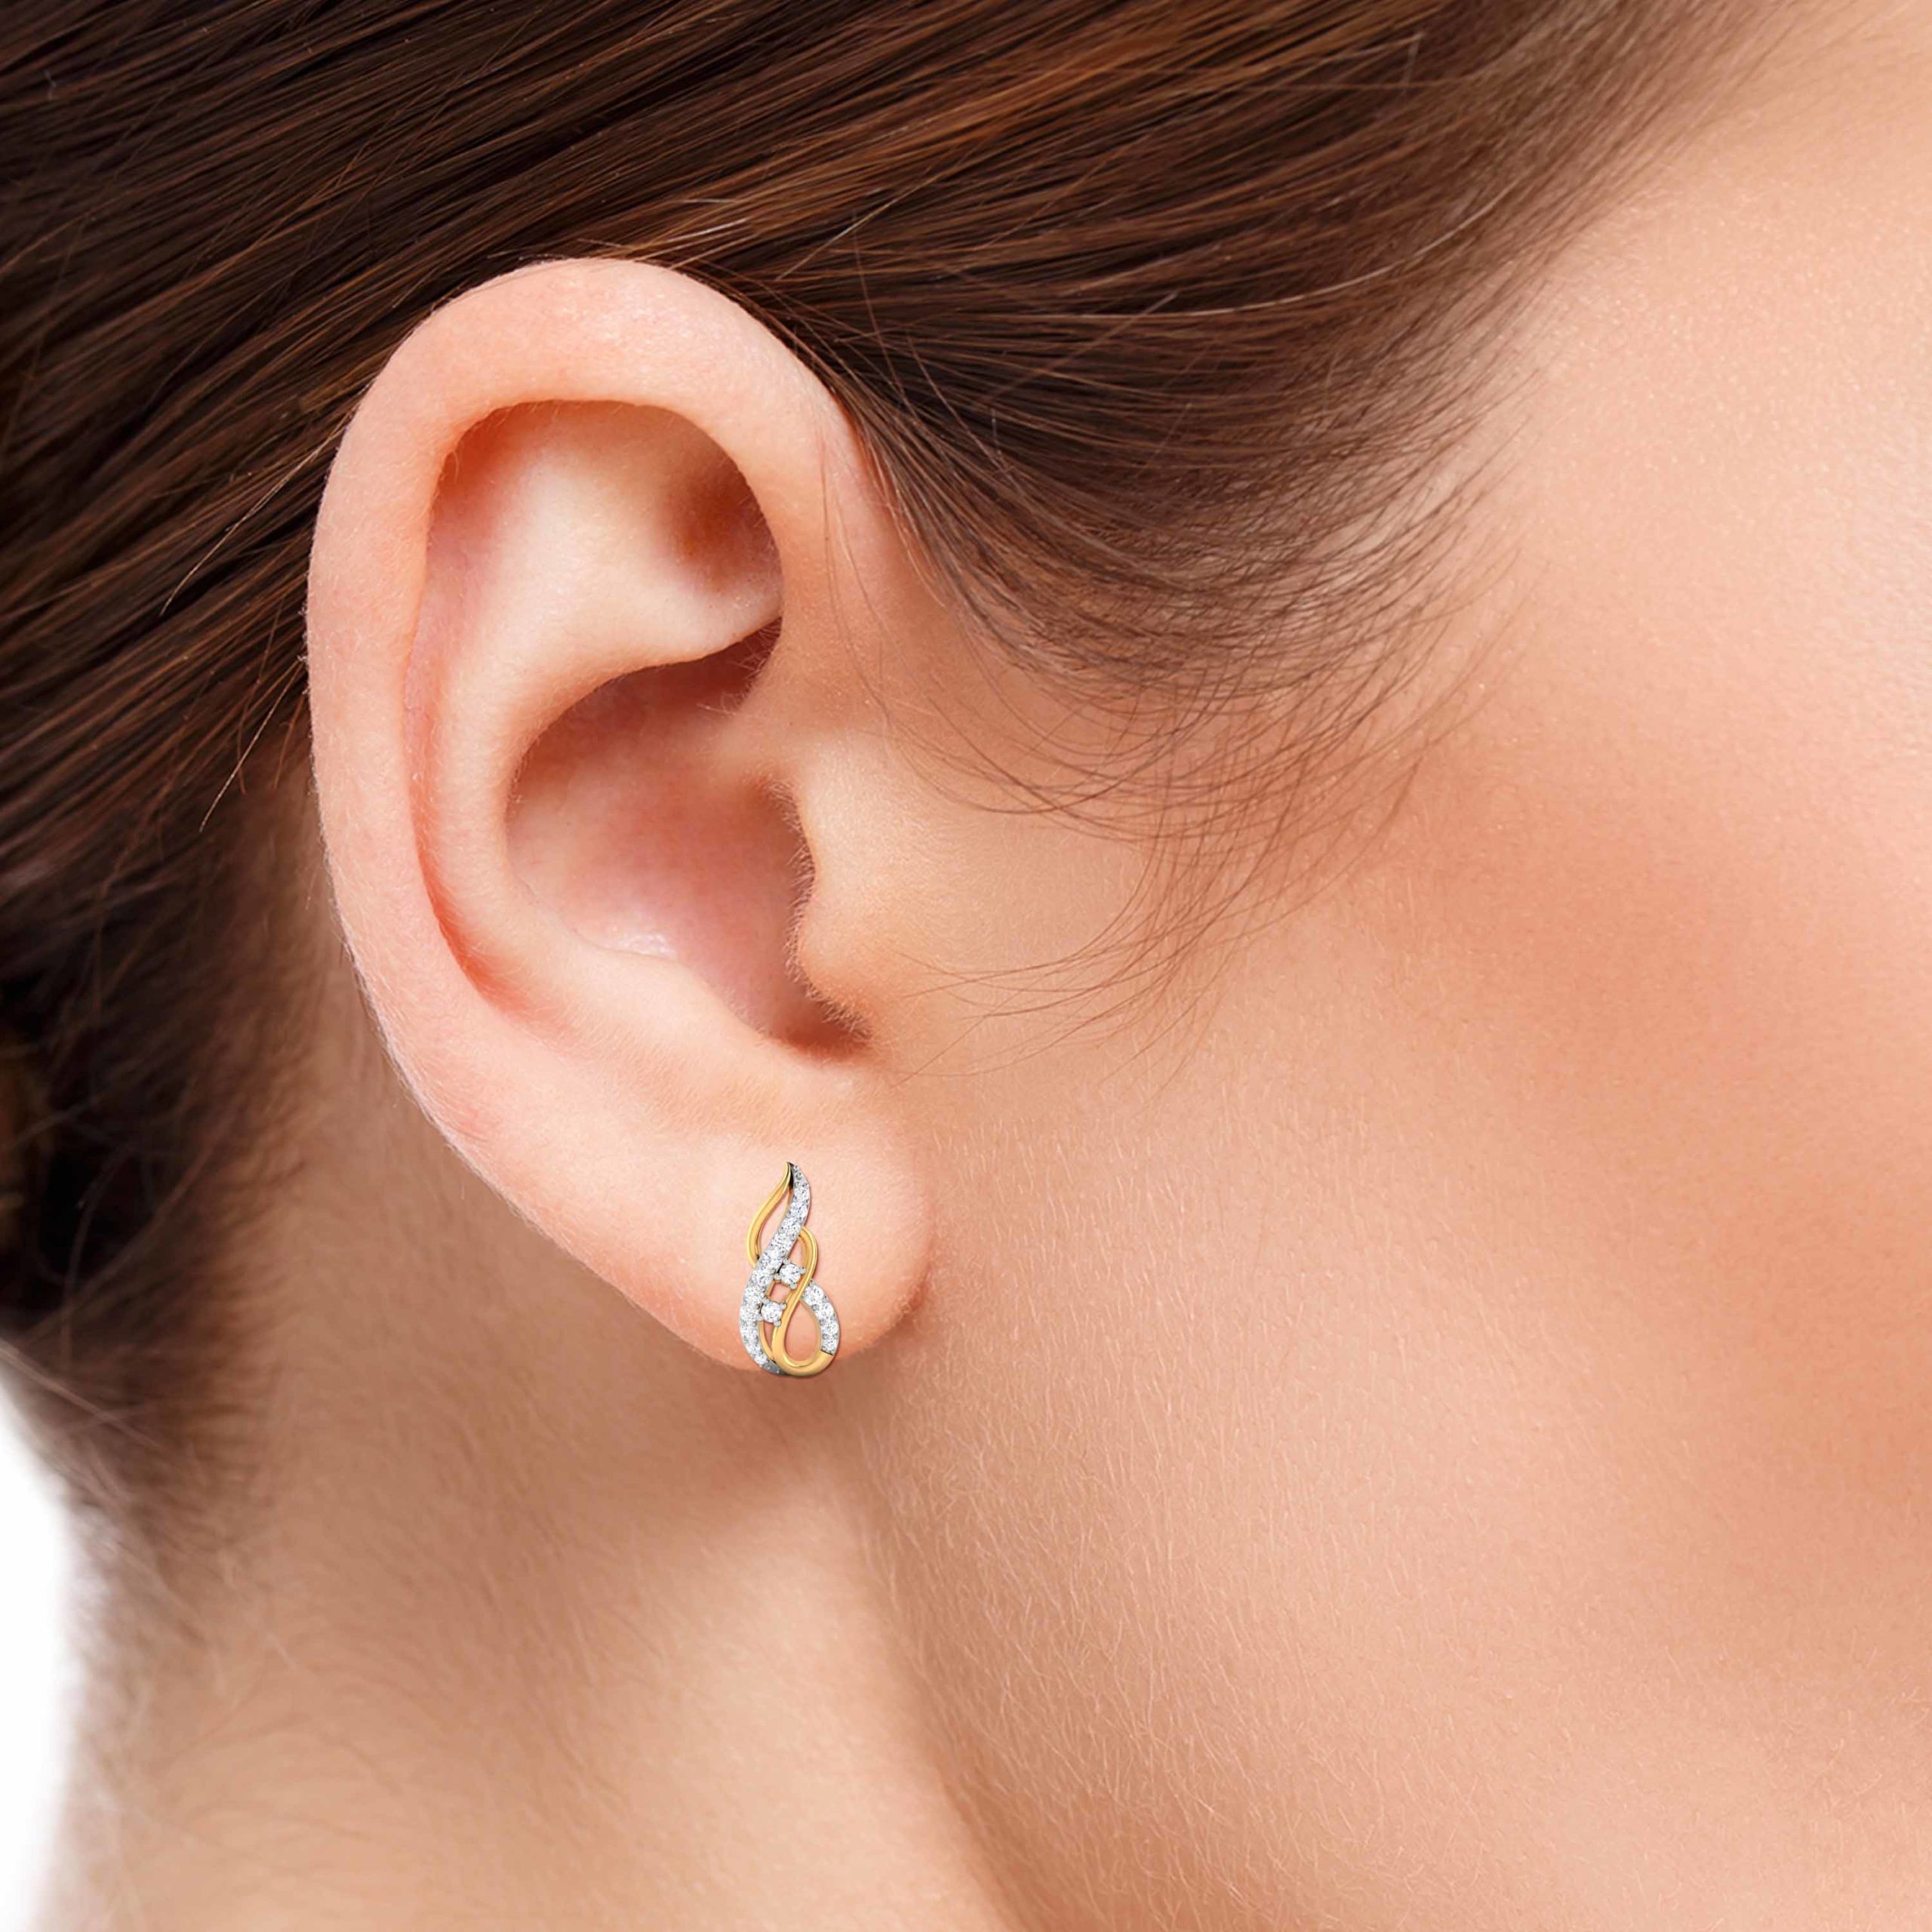 Elegant Sterling Silver Infinity Sign Stud Earrings